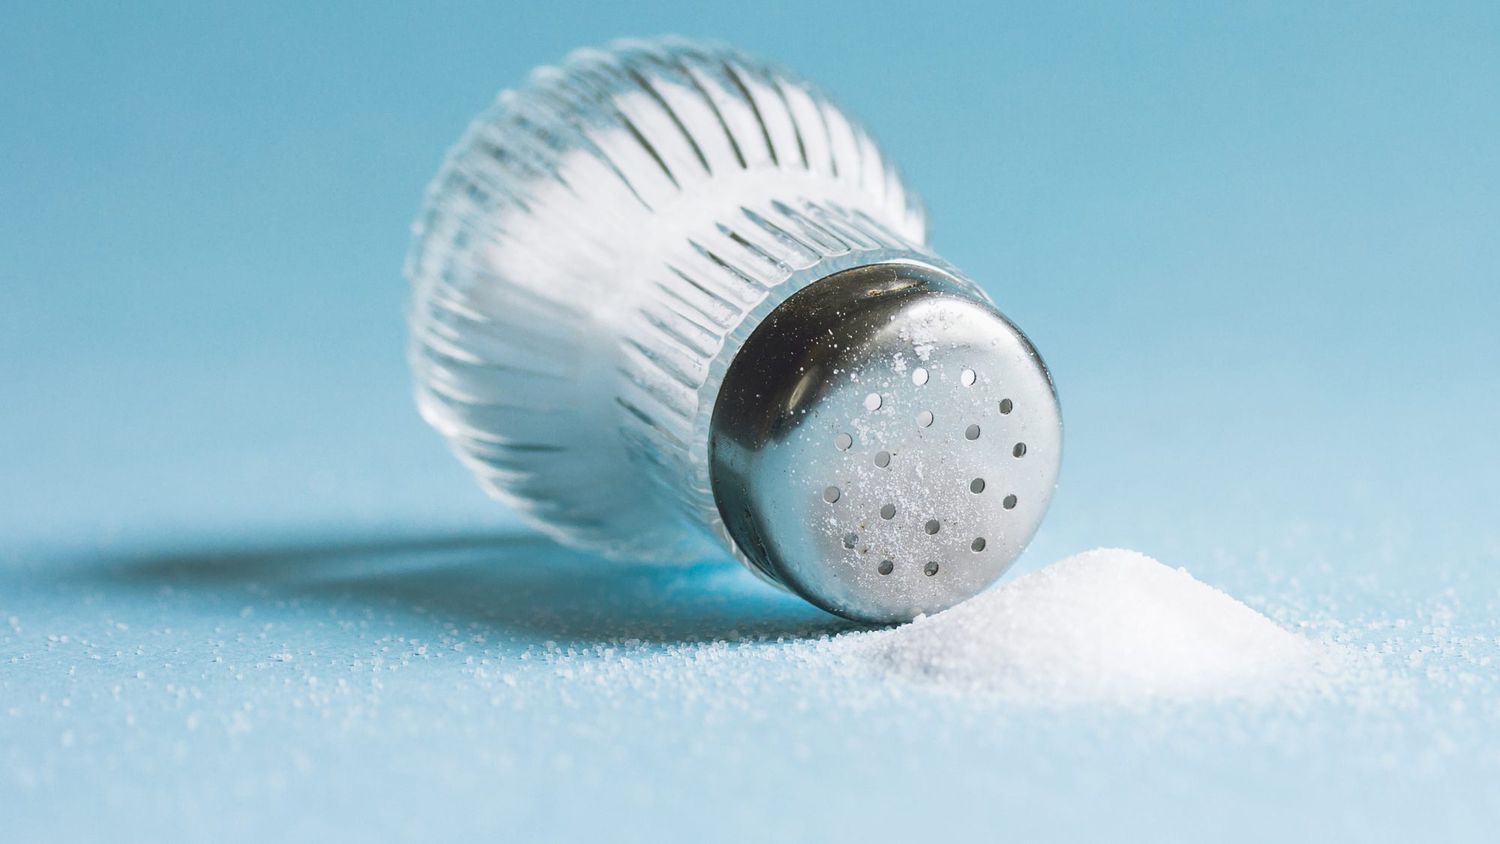 Foods-bad-for-heart-health: salt shaker